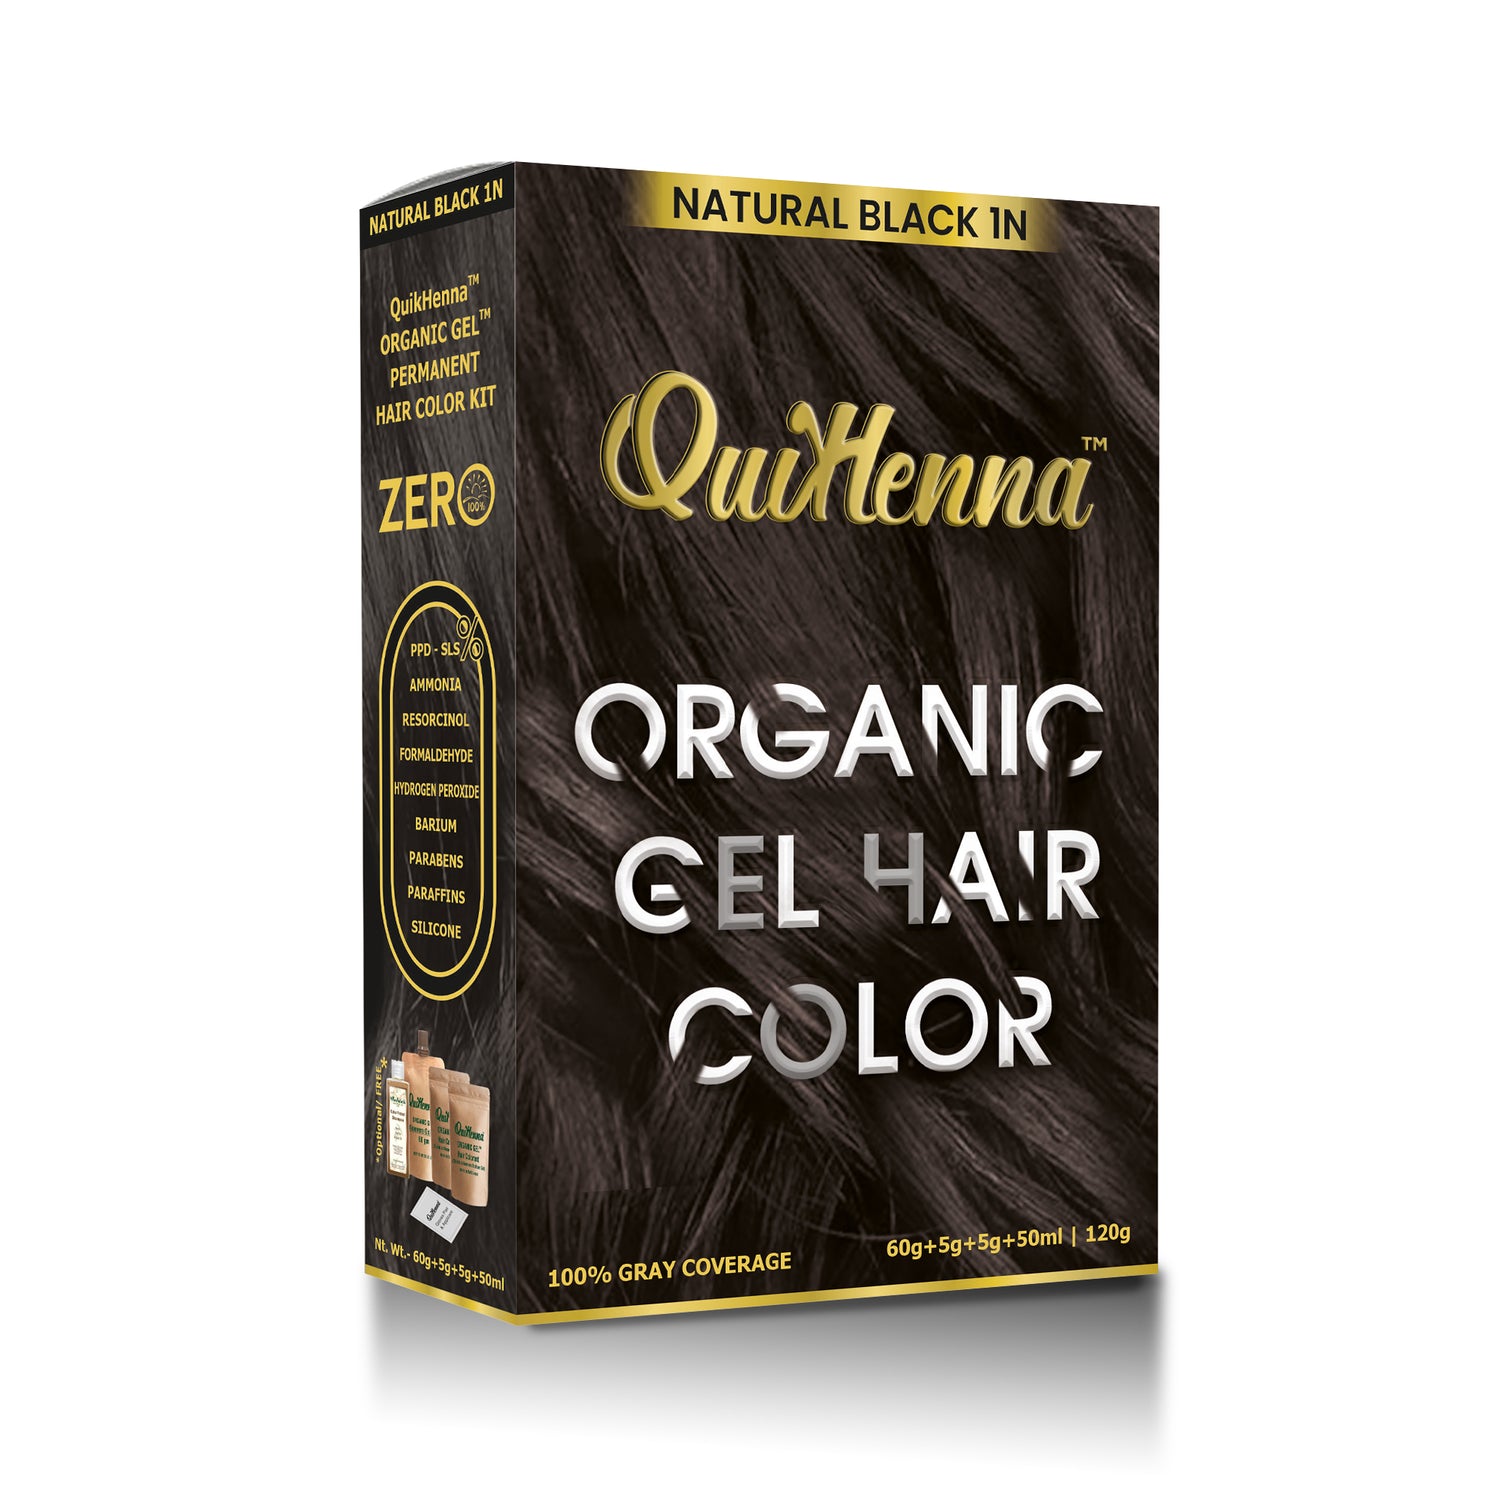 QuikHenna Organic Gel Hair Colour natural black 